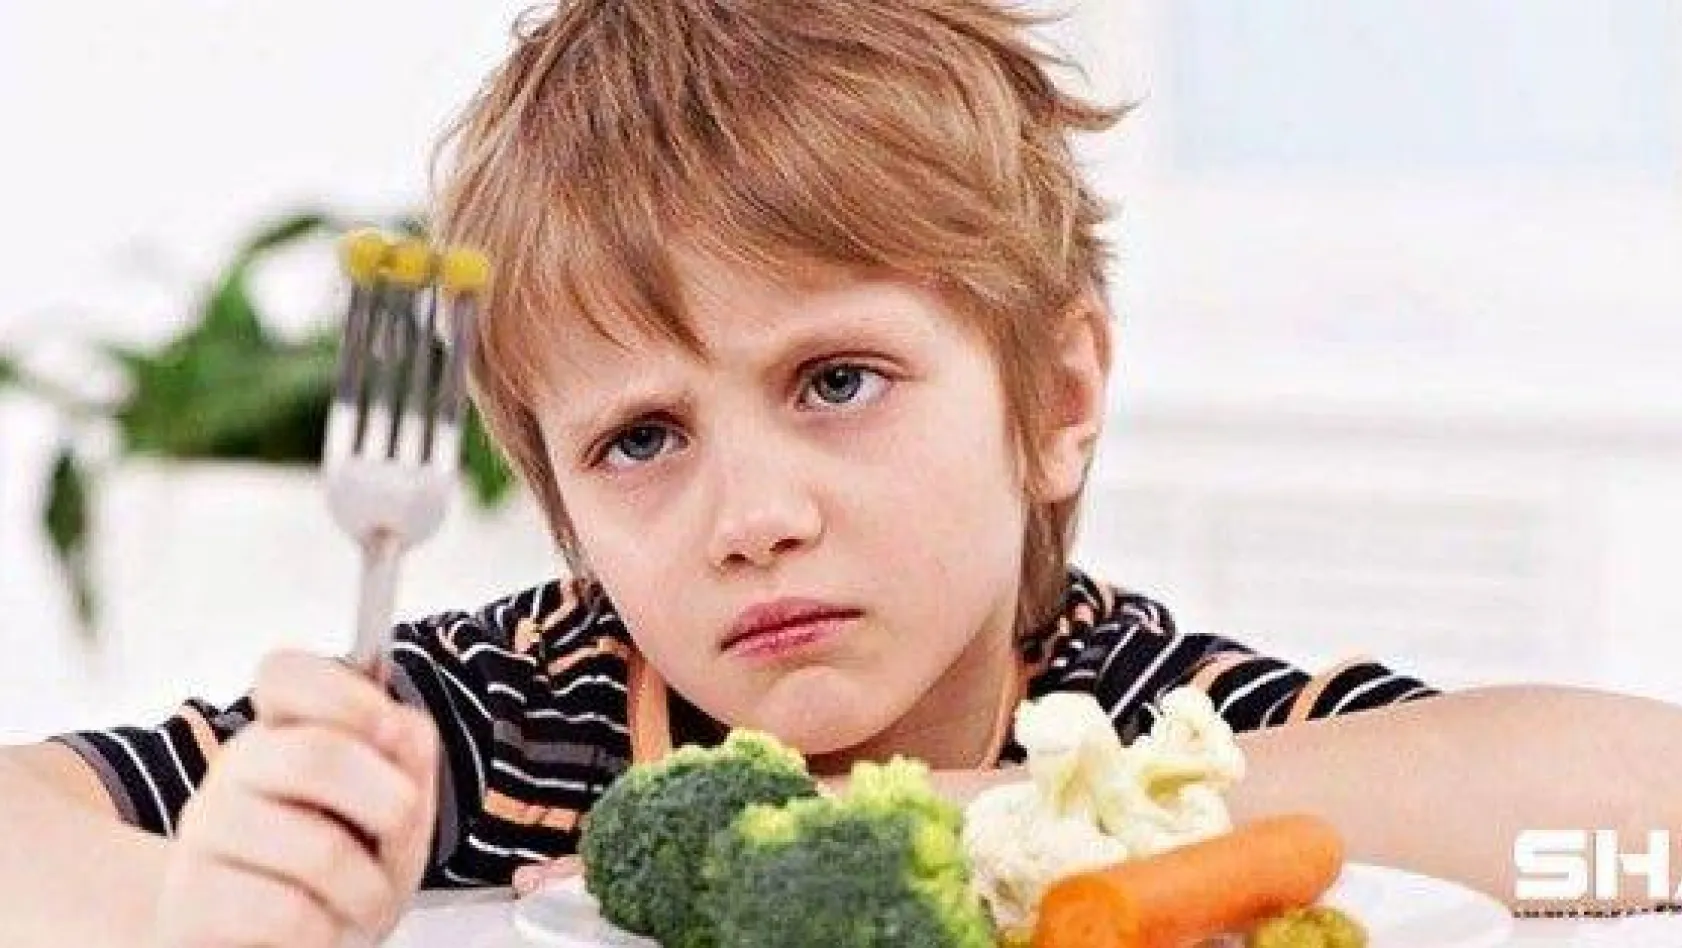 Çocuğunuz yemek yemiyorsa alternatif sunmayın